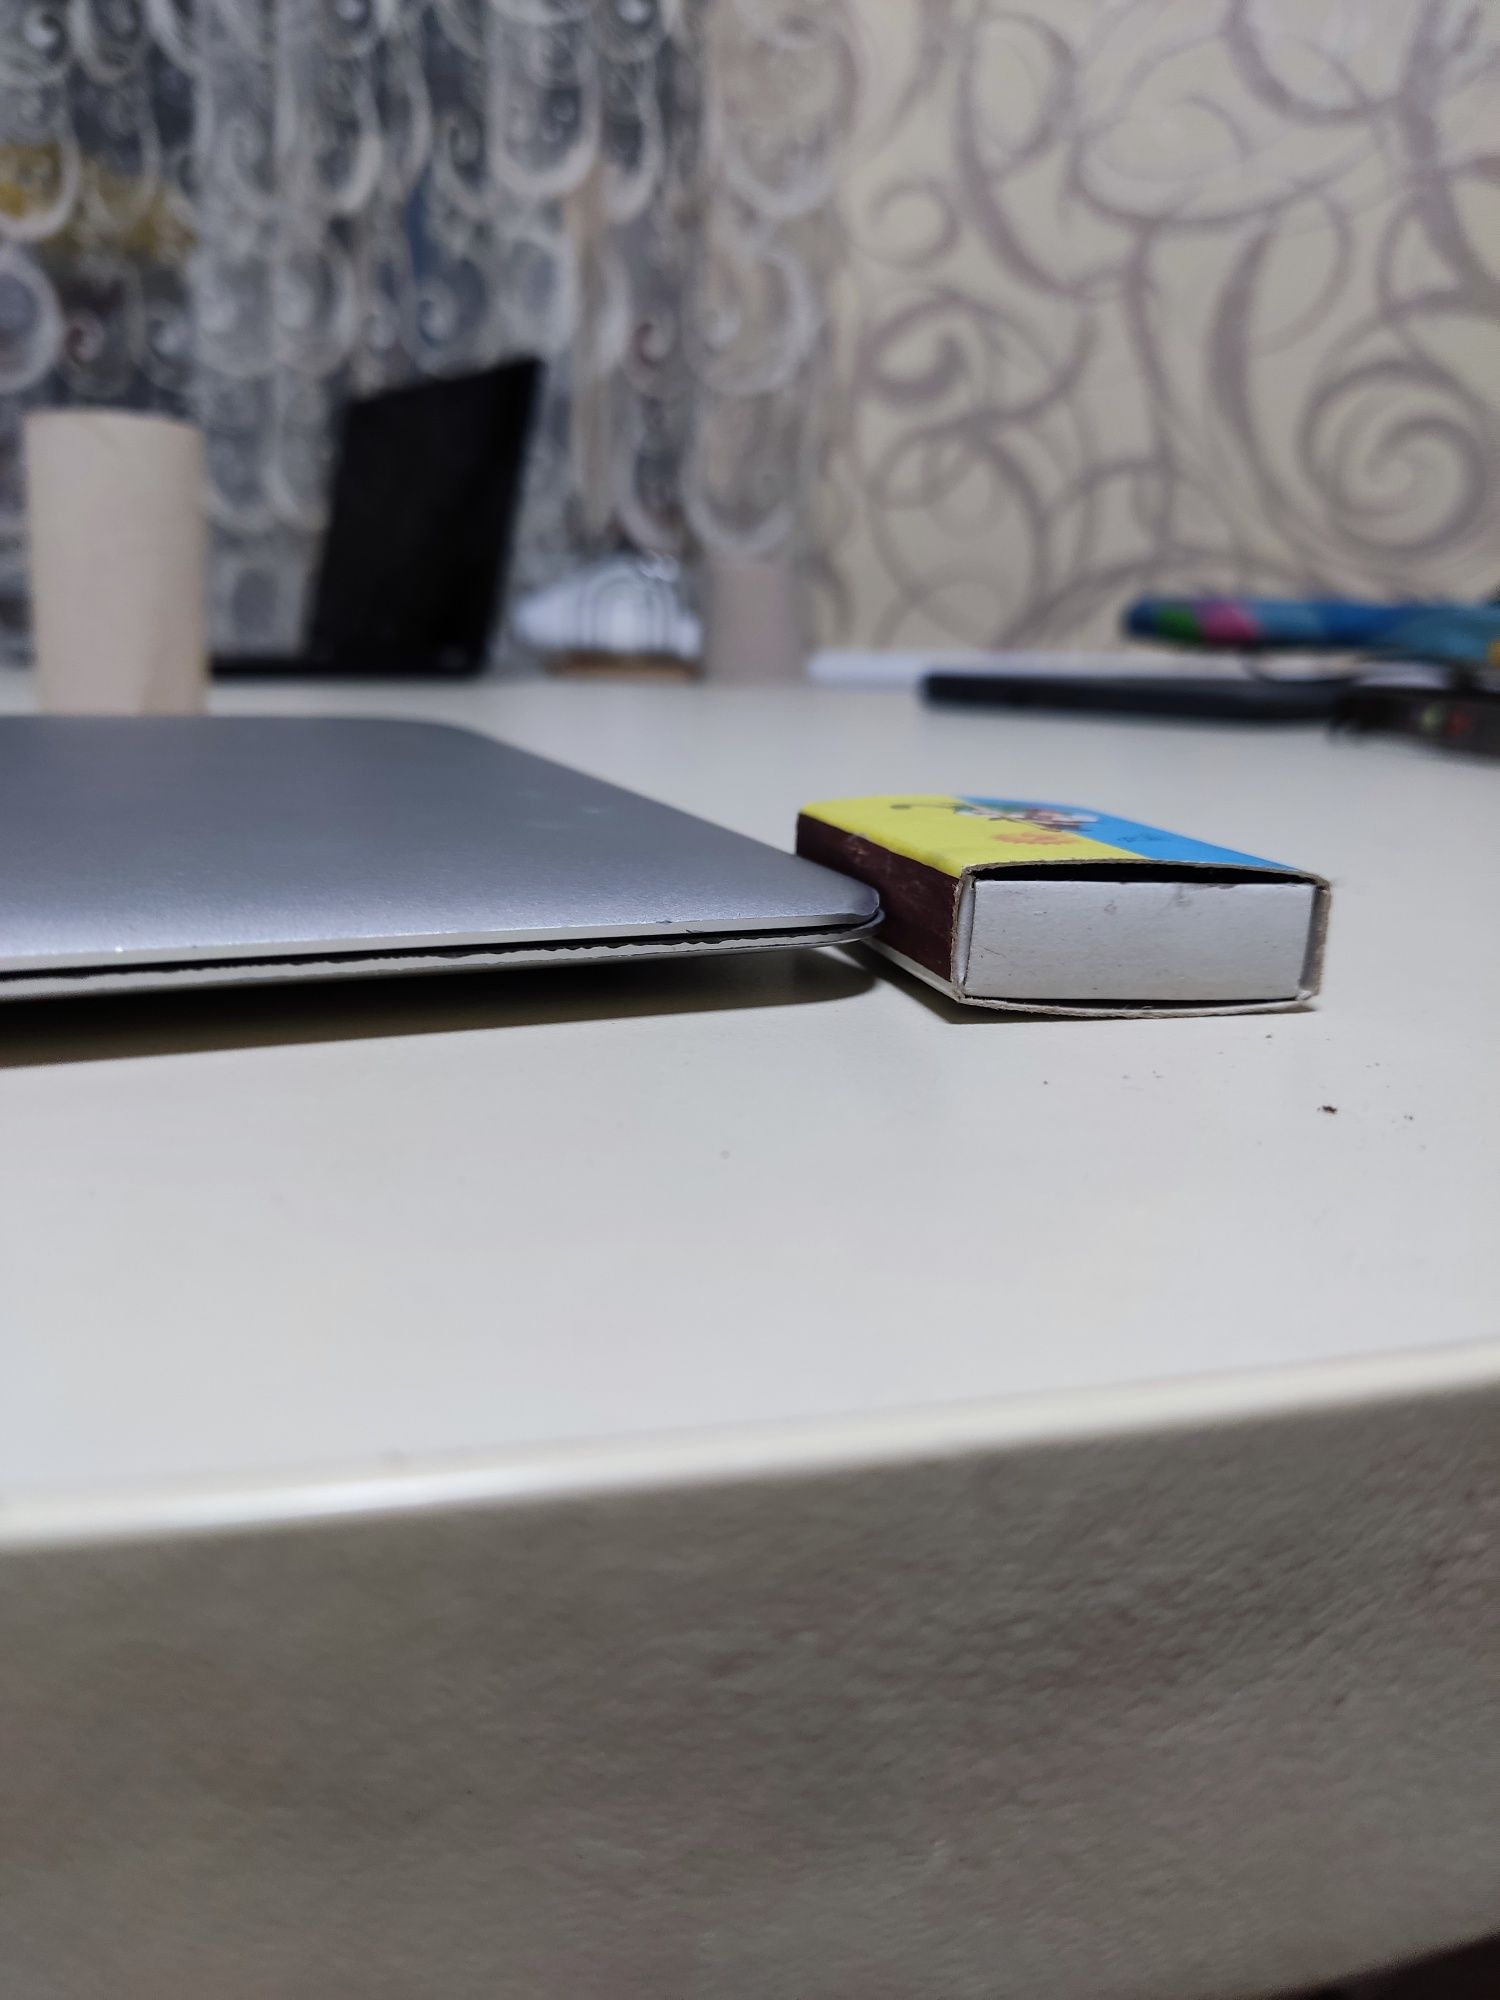 MacBook Air 11,6", 2014